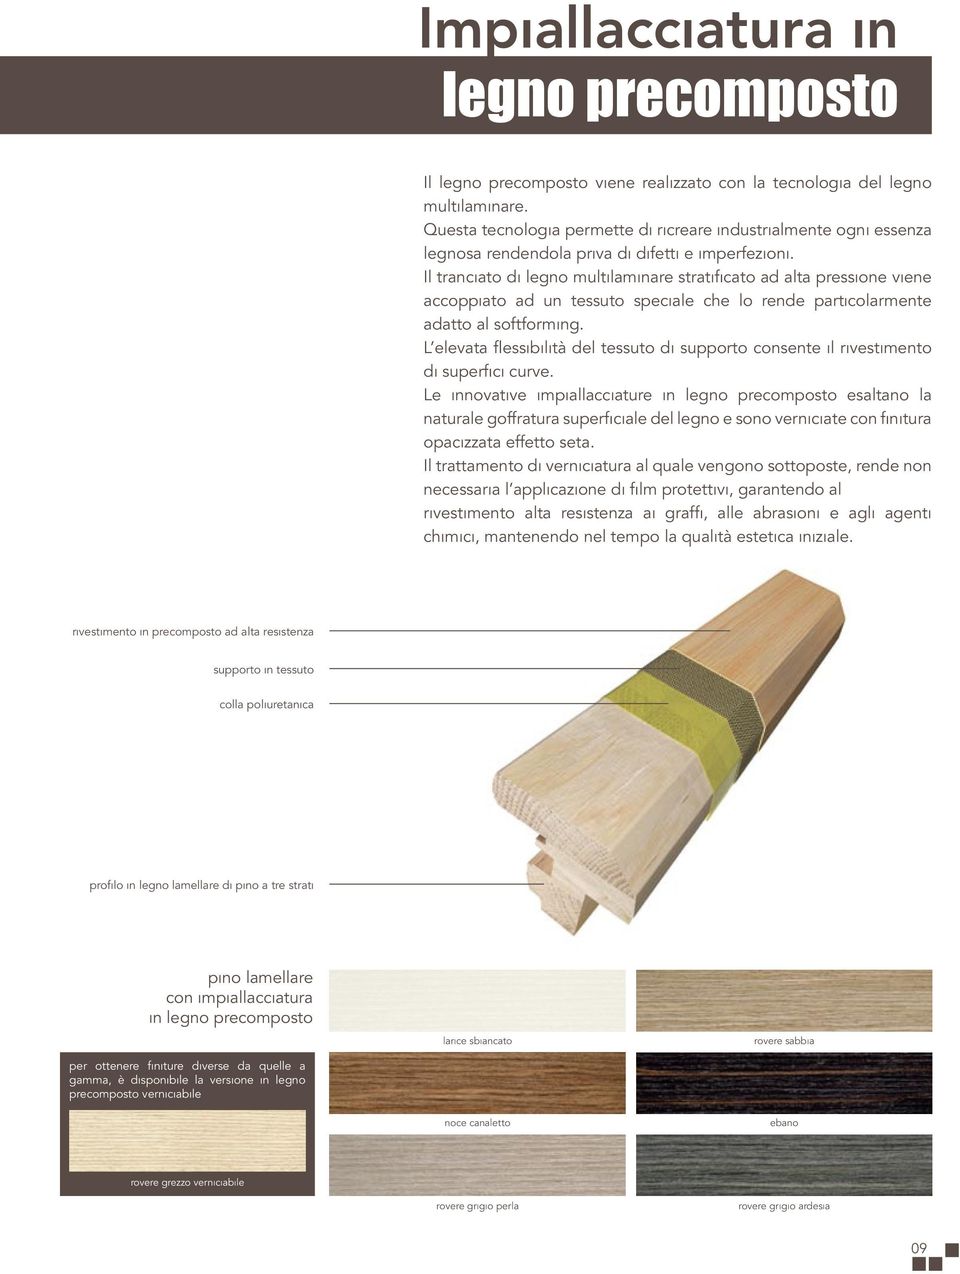 Il tranciato di legno multilaminare stratificato ad alta pressione viene accoppiato ad un tessuto speciale che lo rende particolarmente adatto al softforming.